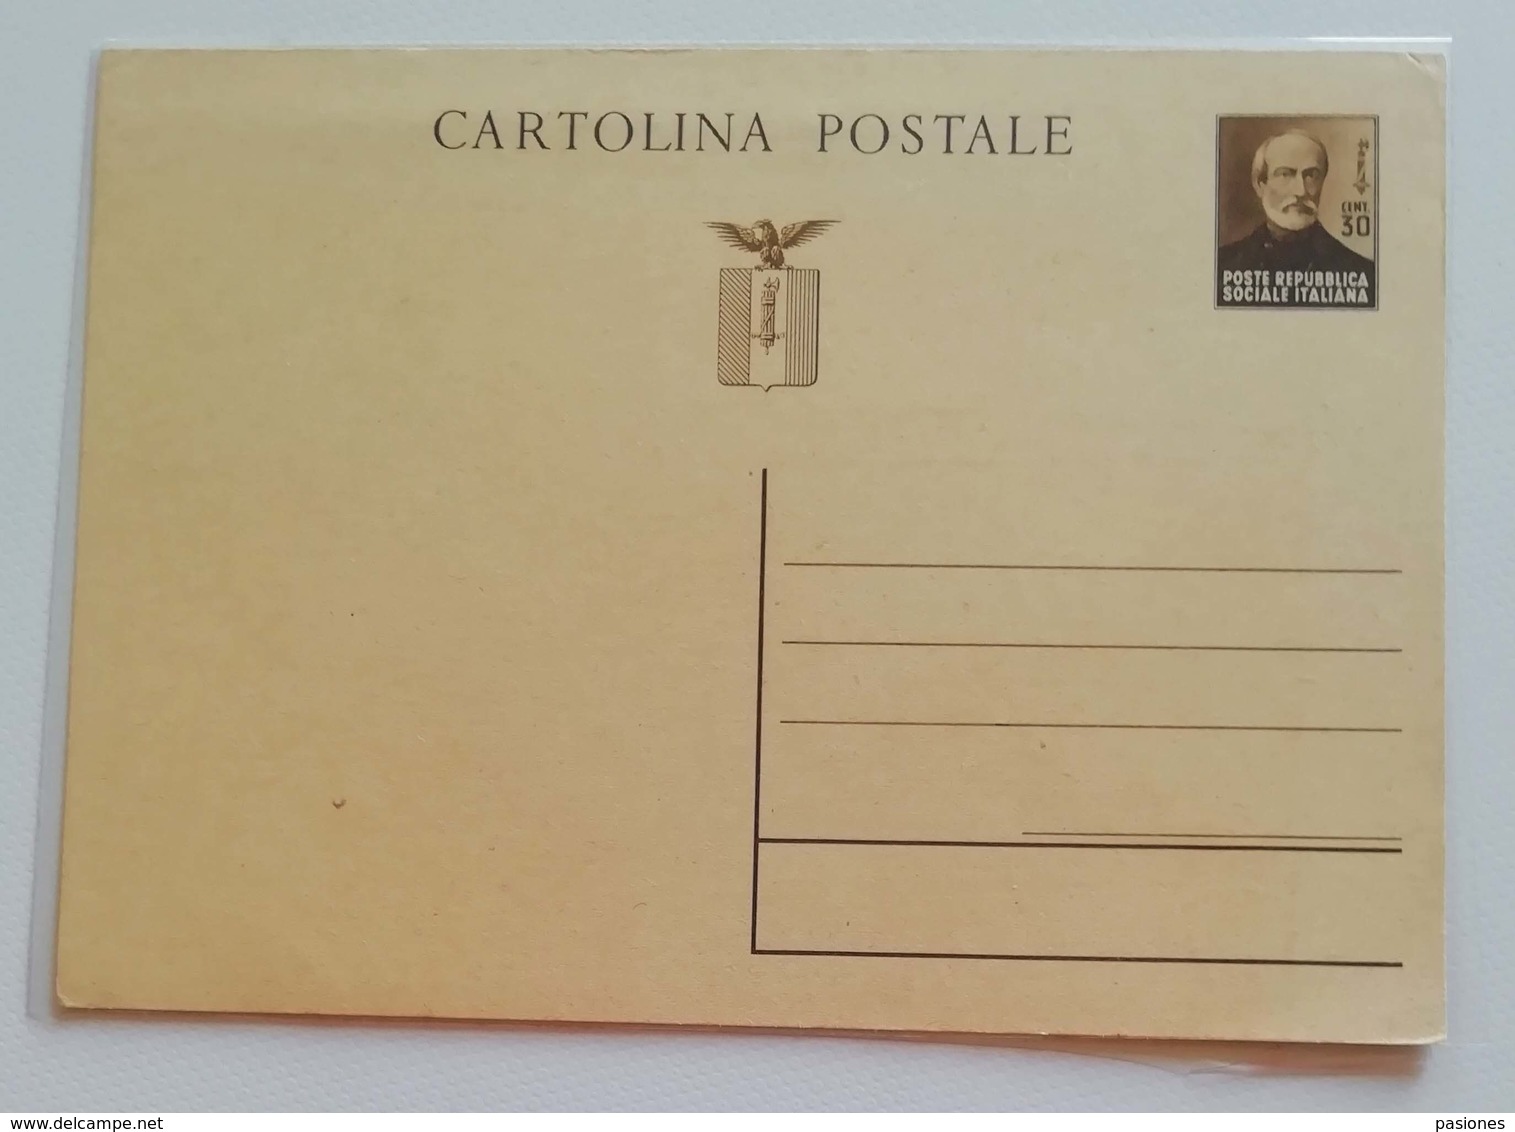 Cartolina Postale Repubblica Sociale Italiana - Non Viaggiata - Interi Postali